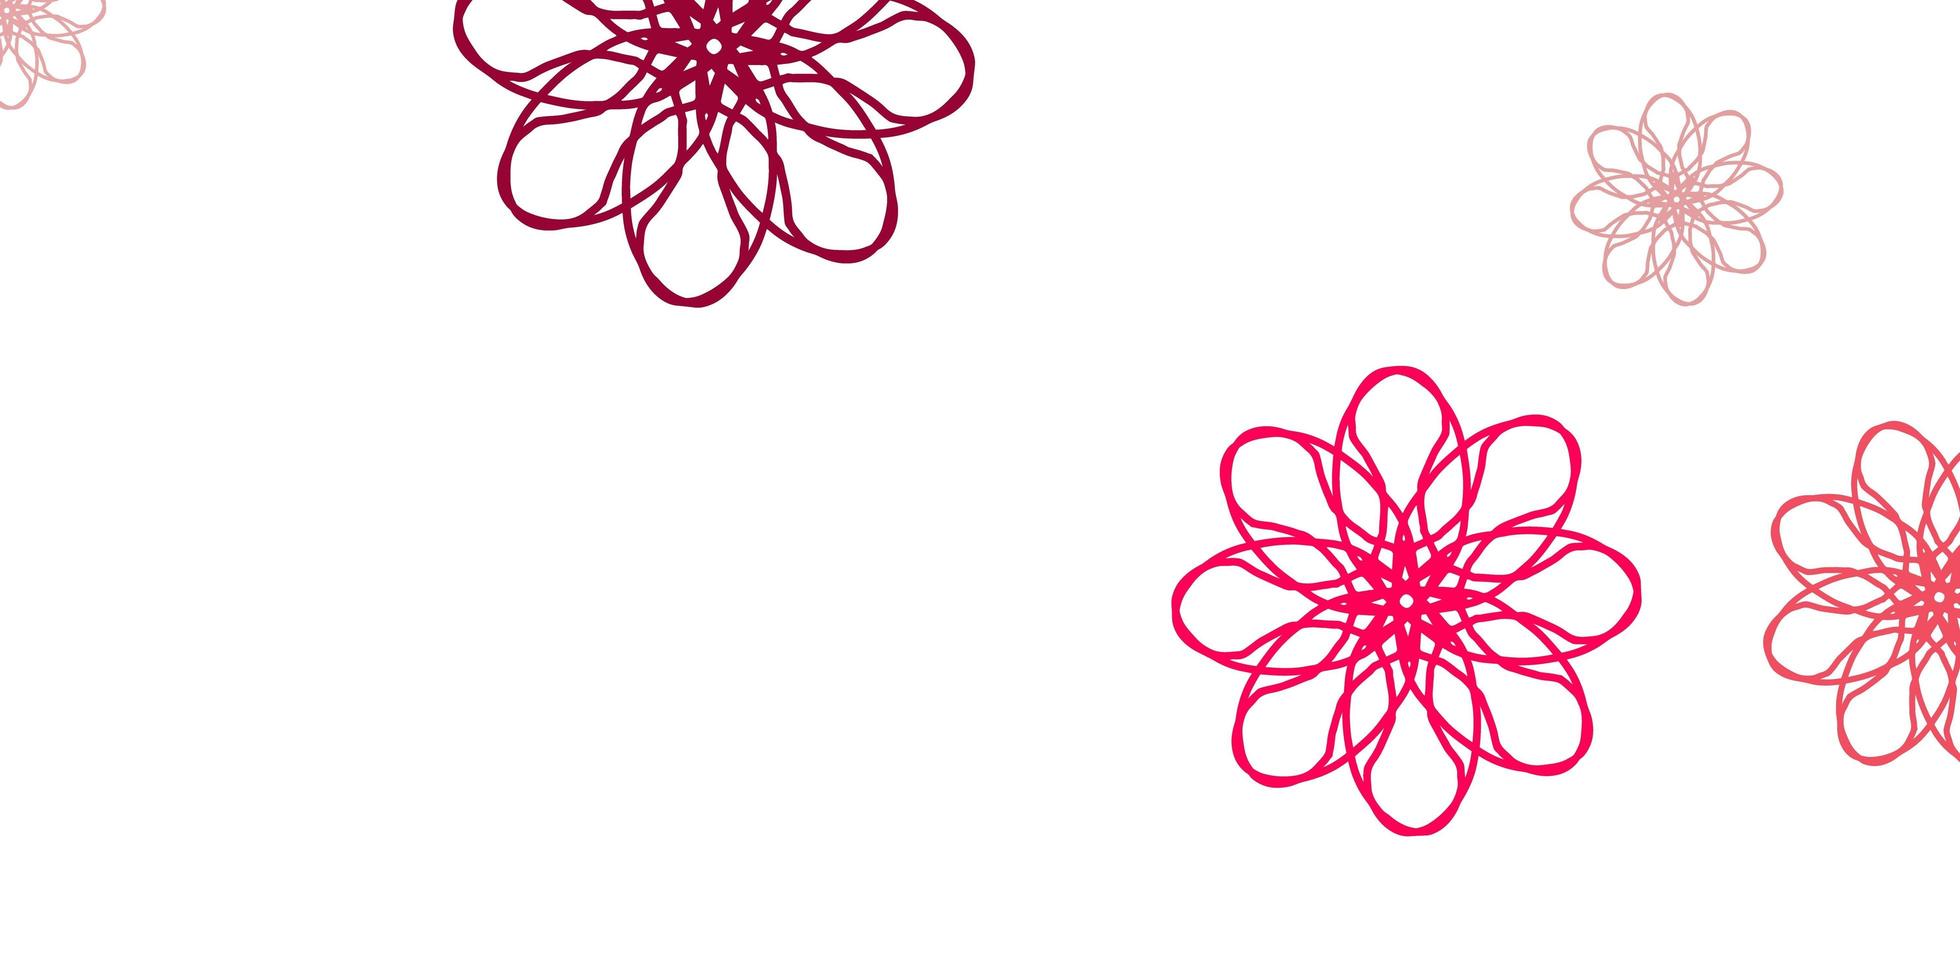 layout naturale vettoriale rosa chiaro, rosso con fiori.